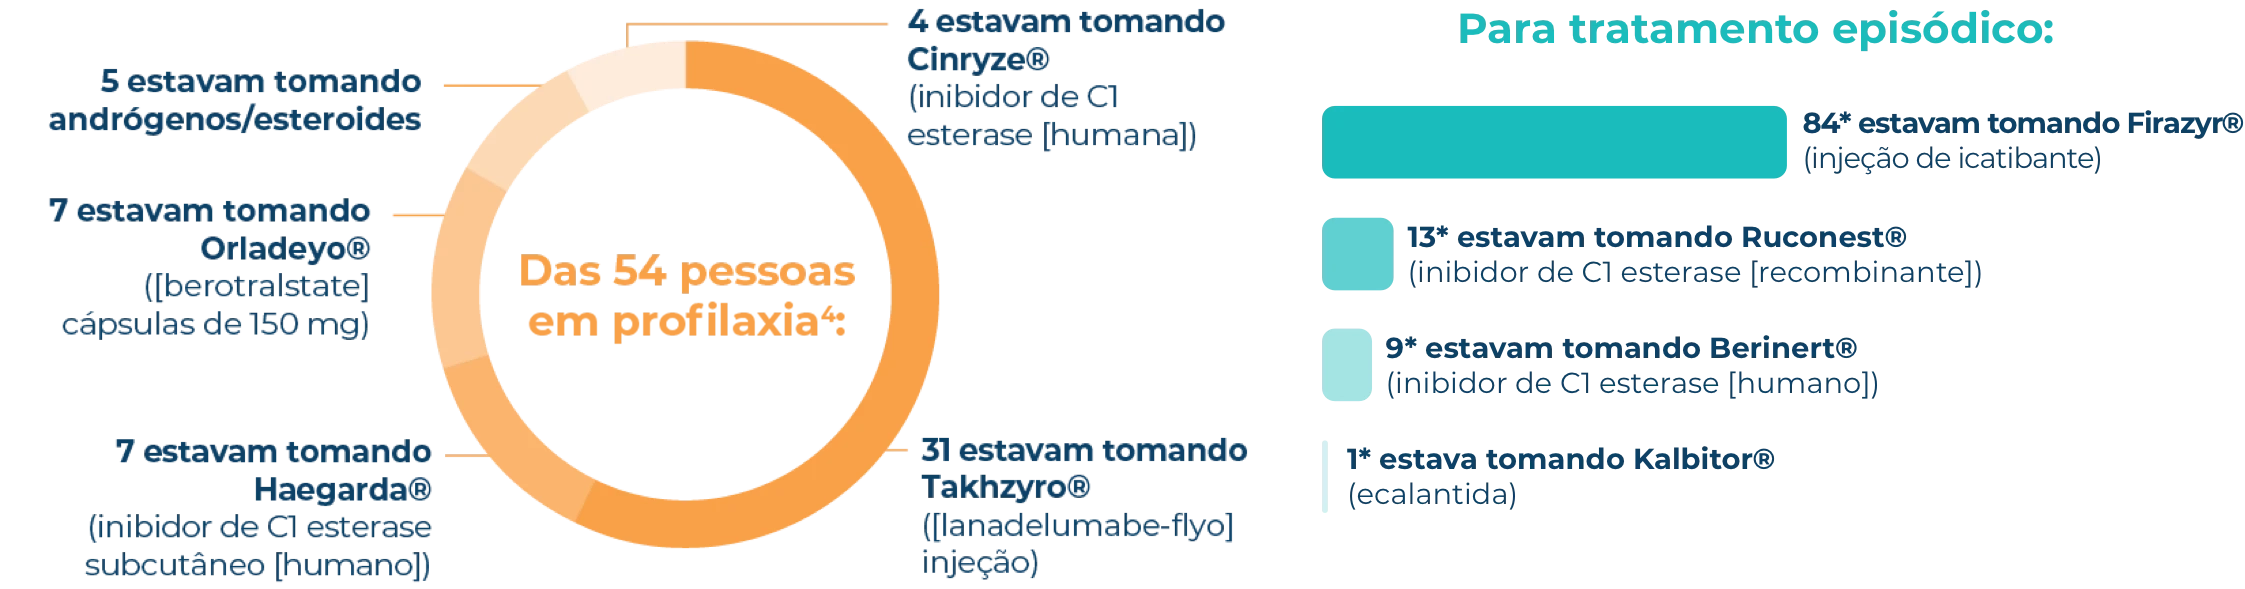 Infográfico da divisão do tratamento profilático para pessoas na Pesquisa de jornada de crise de AEH.